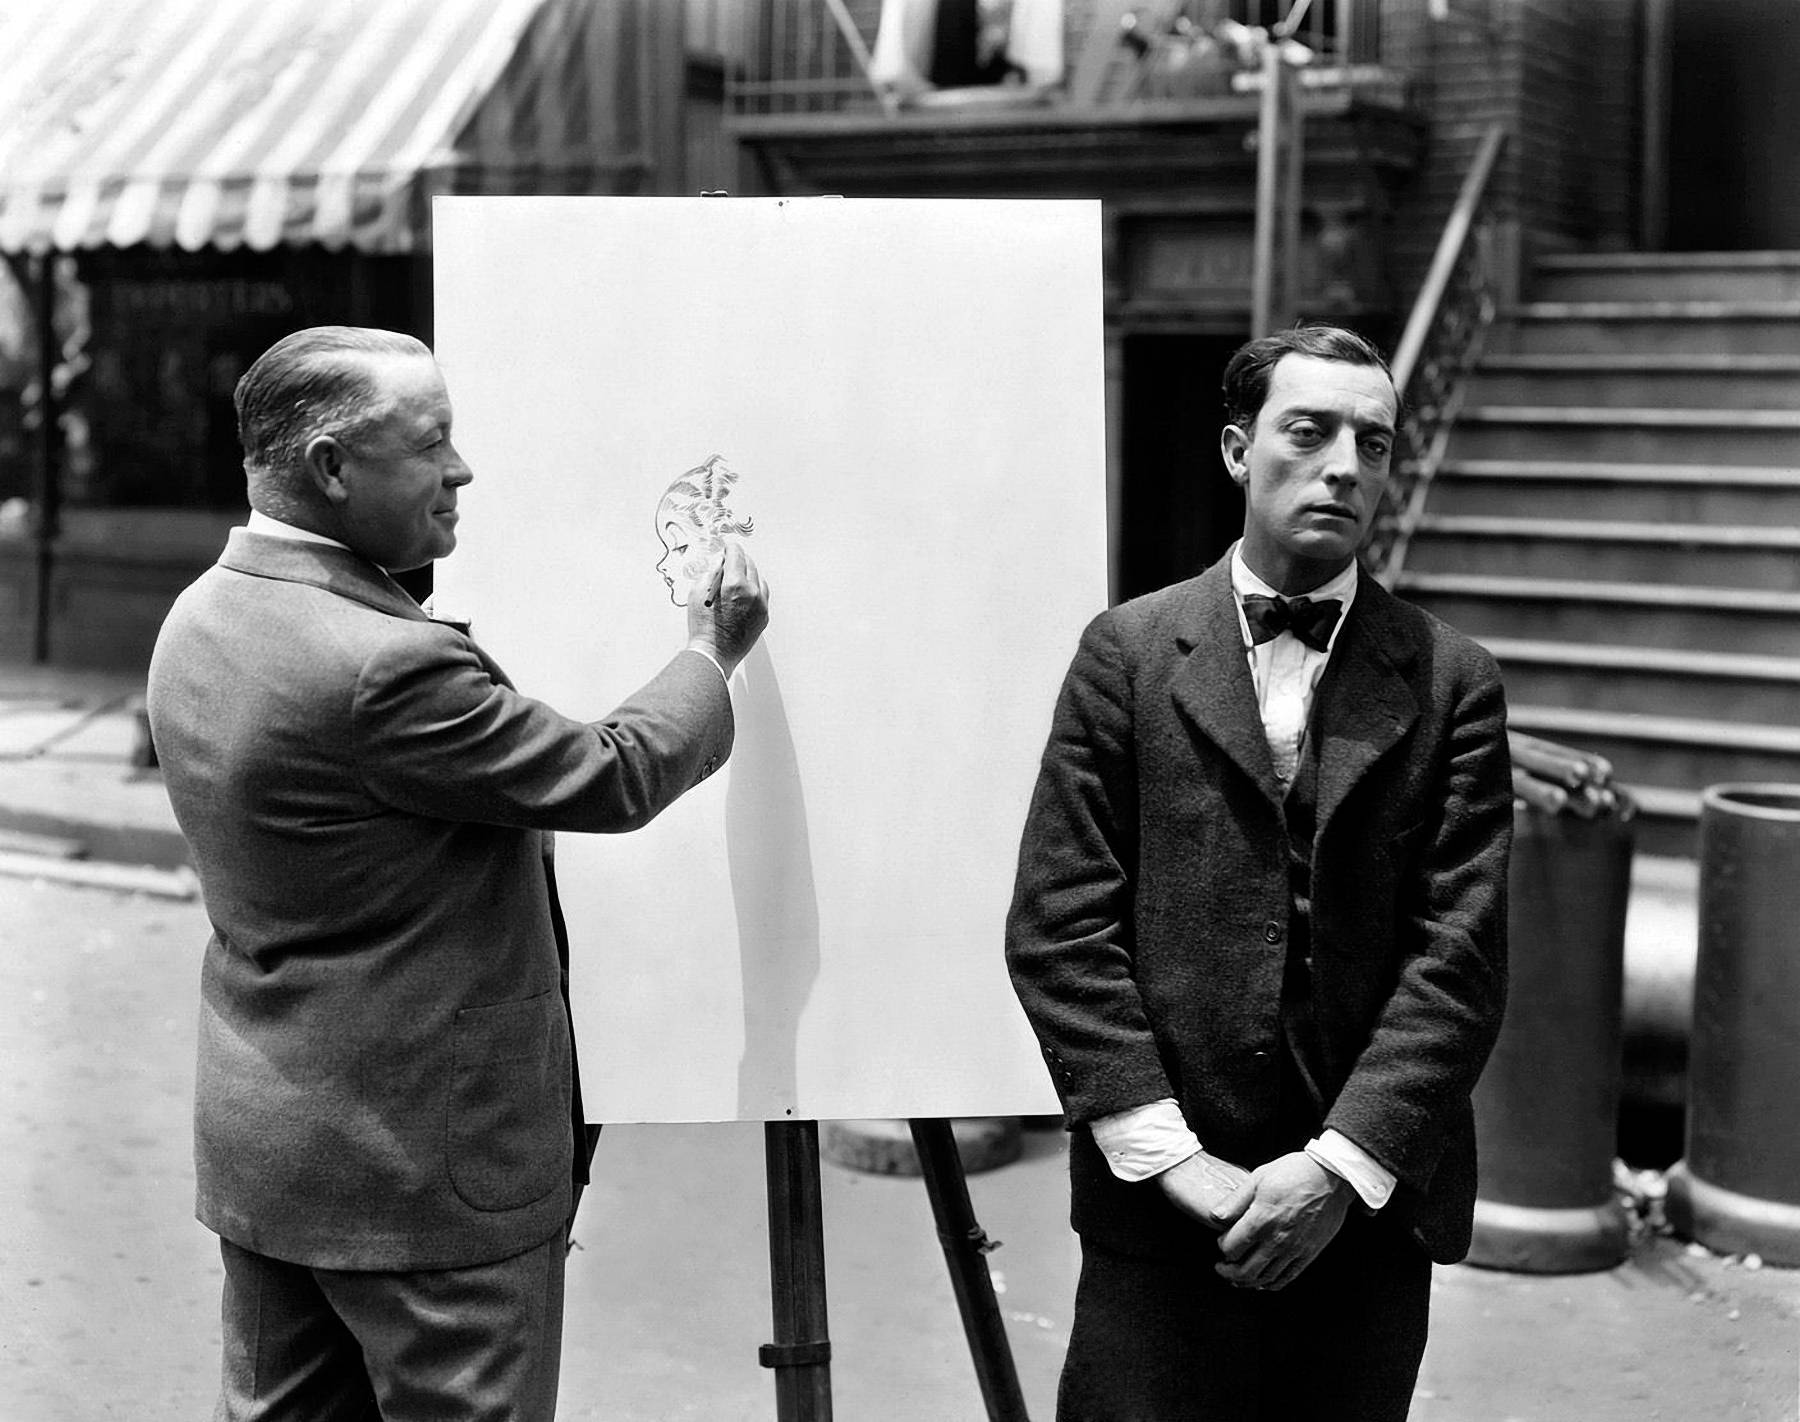 Tegne latter slår Buster Keaton skuespiller Wallpaper